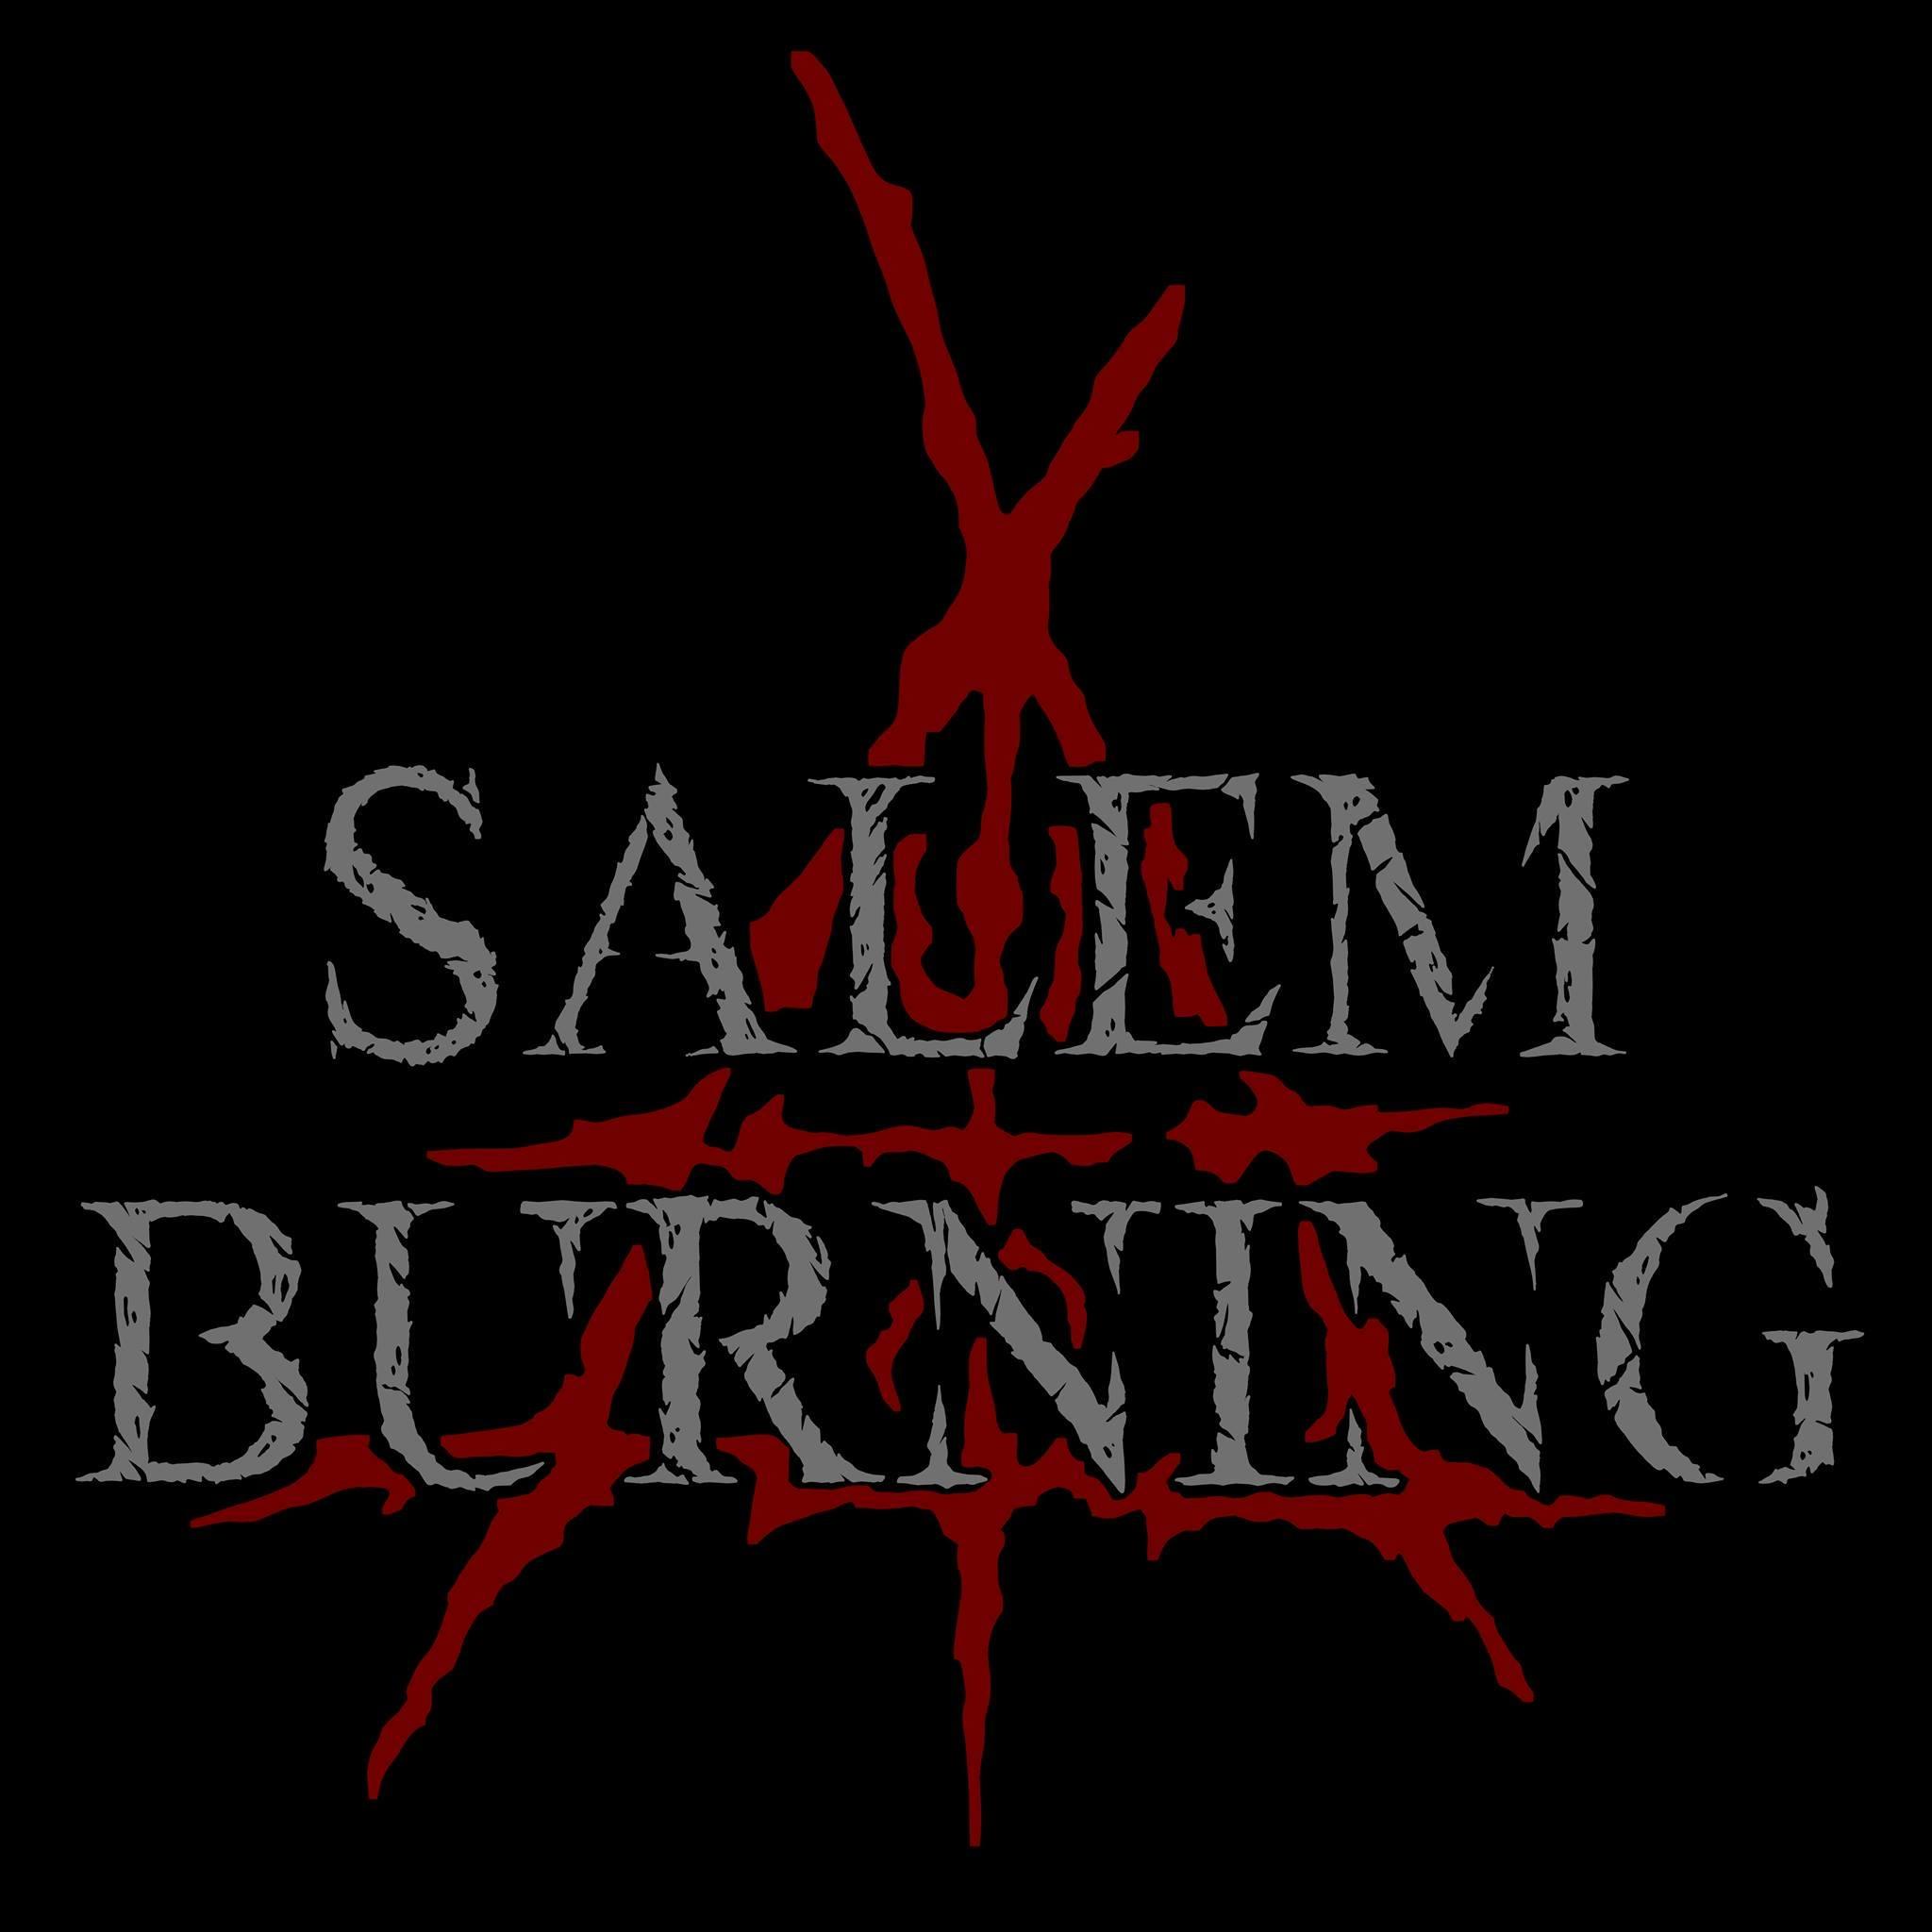 Salem Burning